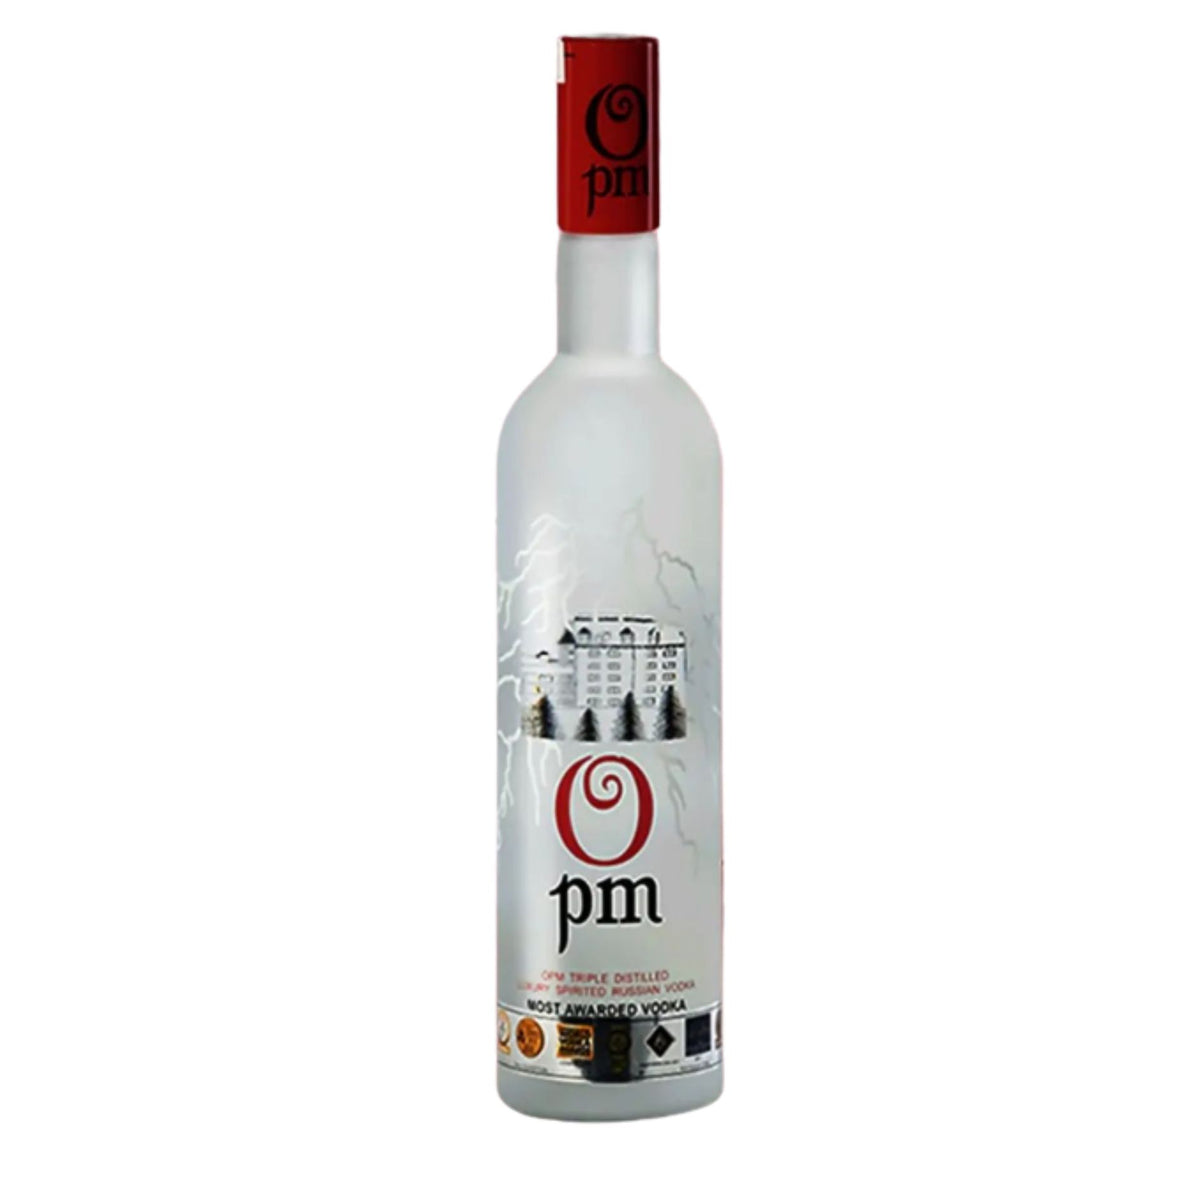 OPM Triple Distilled Luxury Spirited Russian Vodka